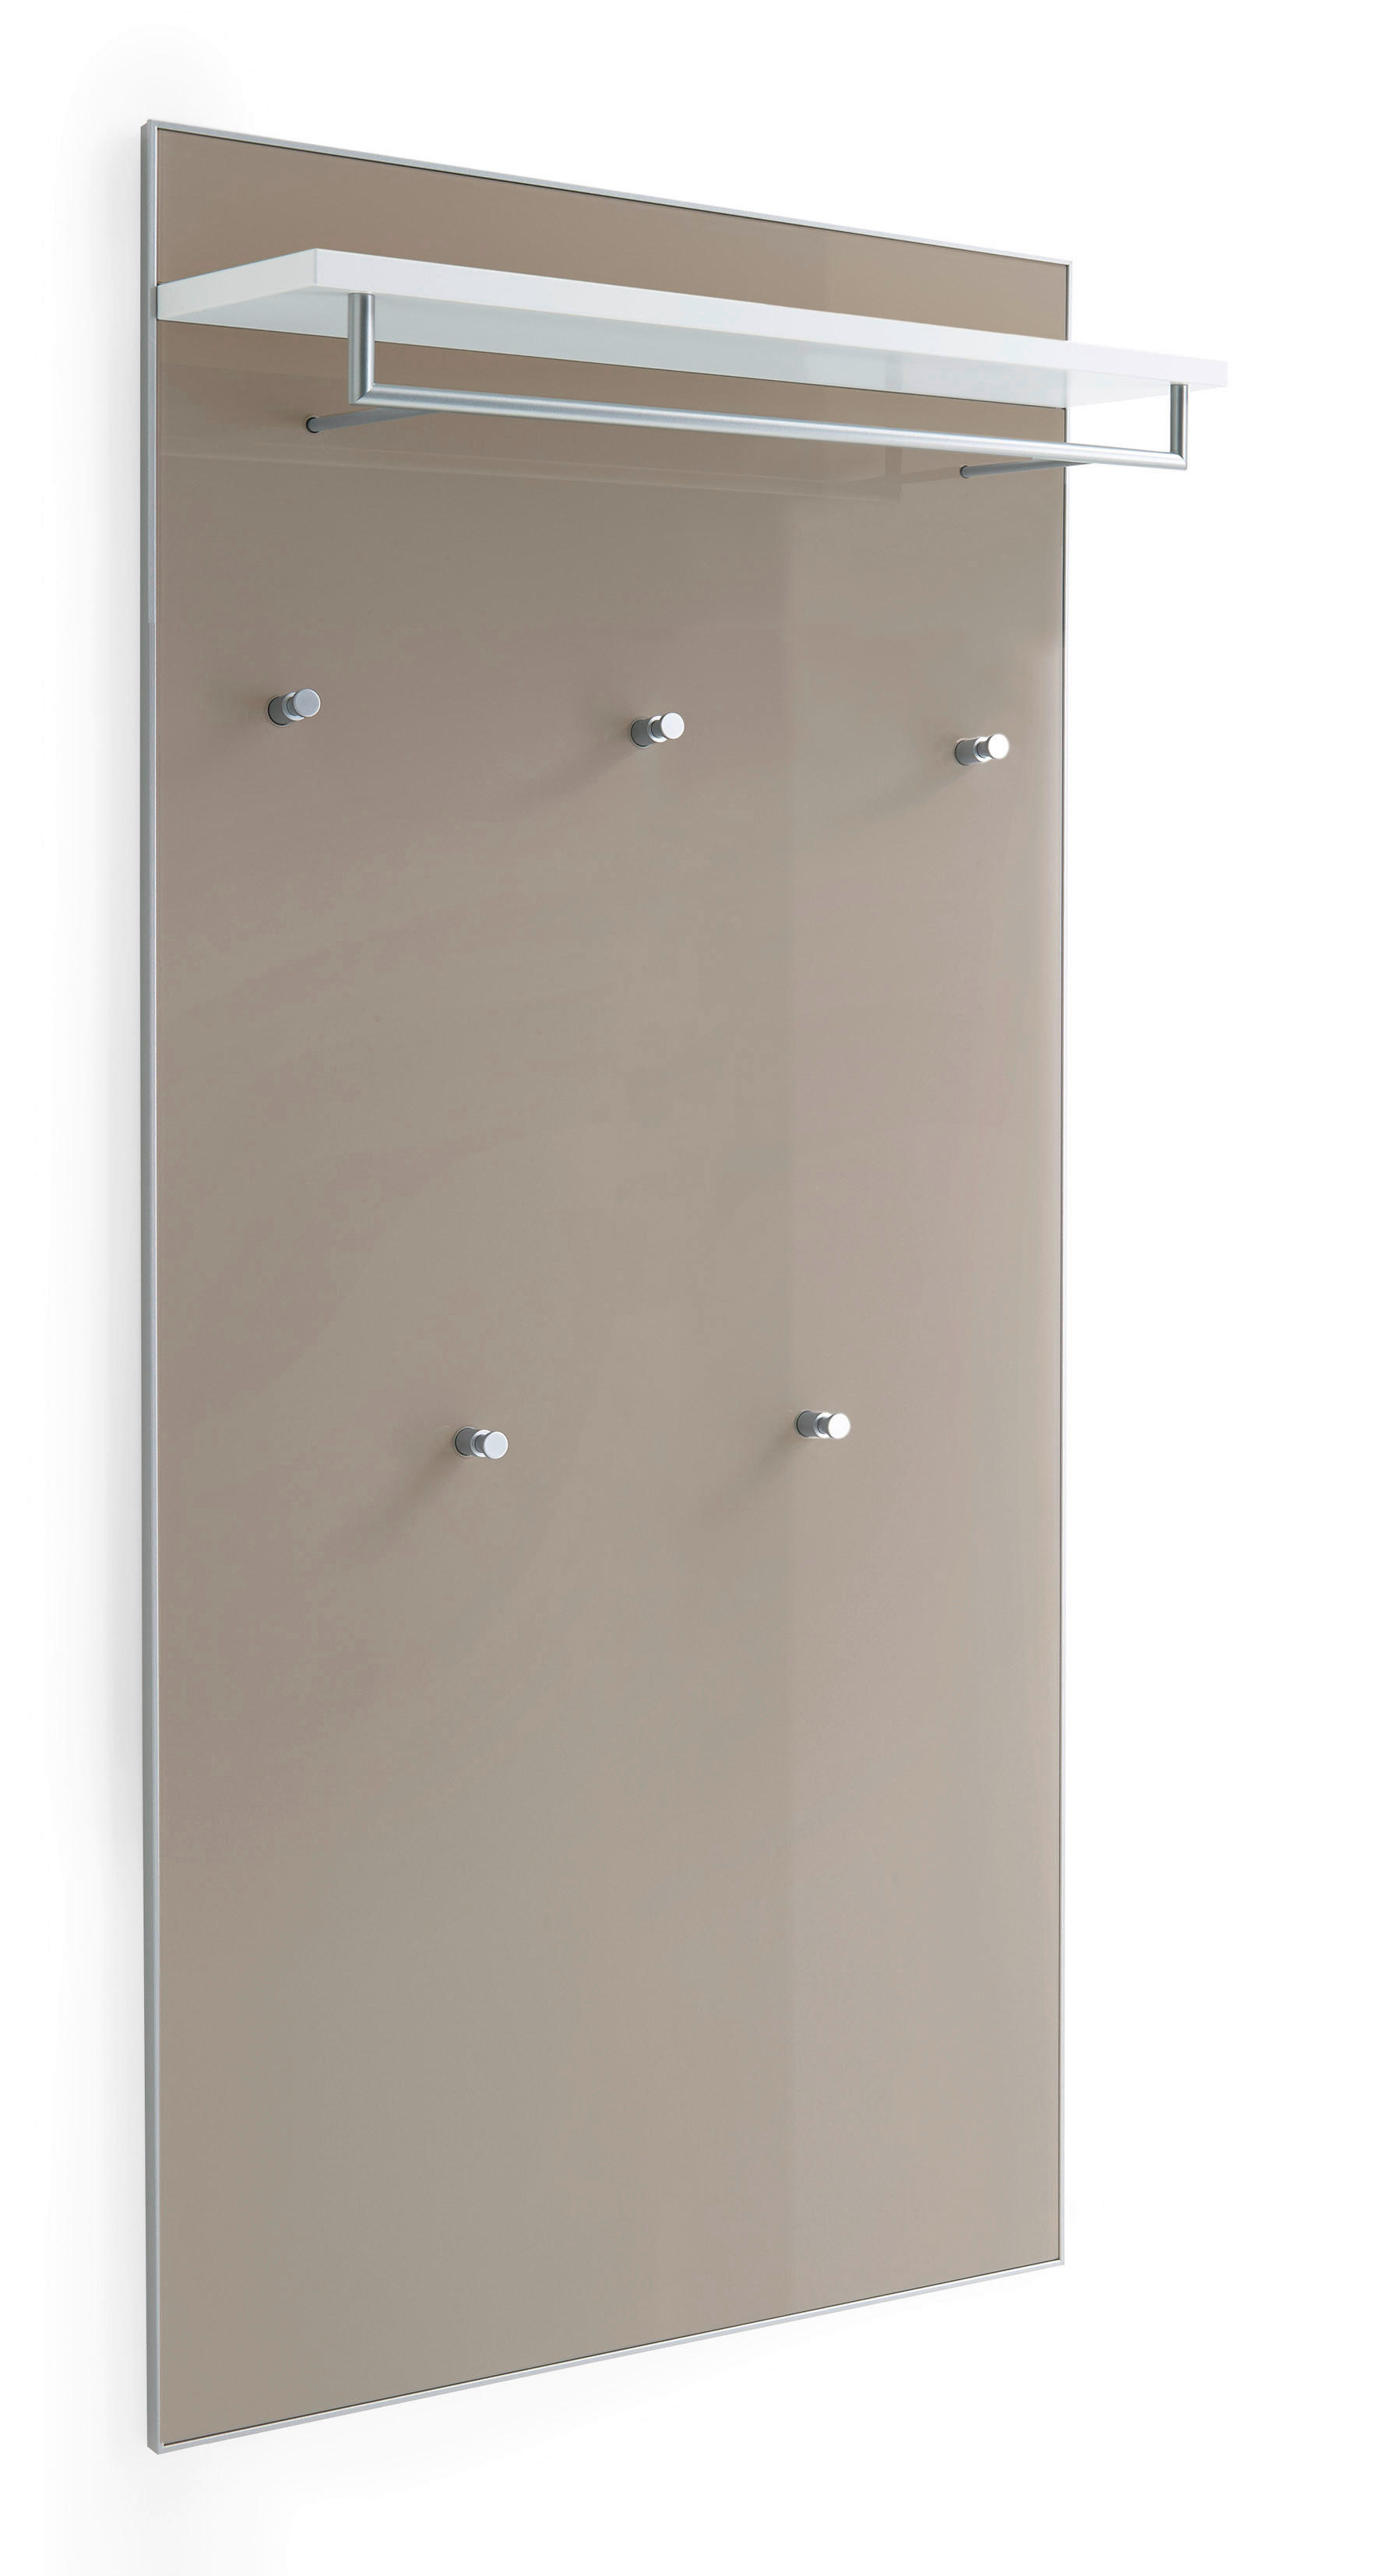 GARDEROBENPANEEL Weiß, Taupe  - Taupe/Weiß, Design, Glas (80/170/27cm)